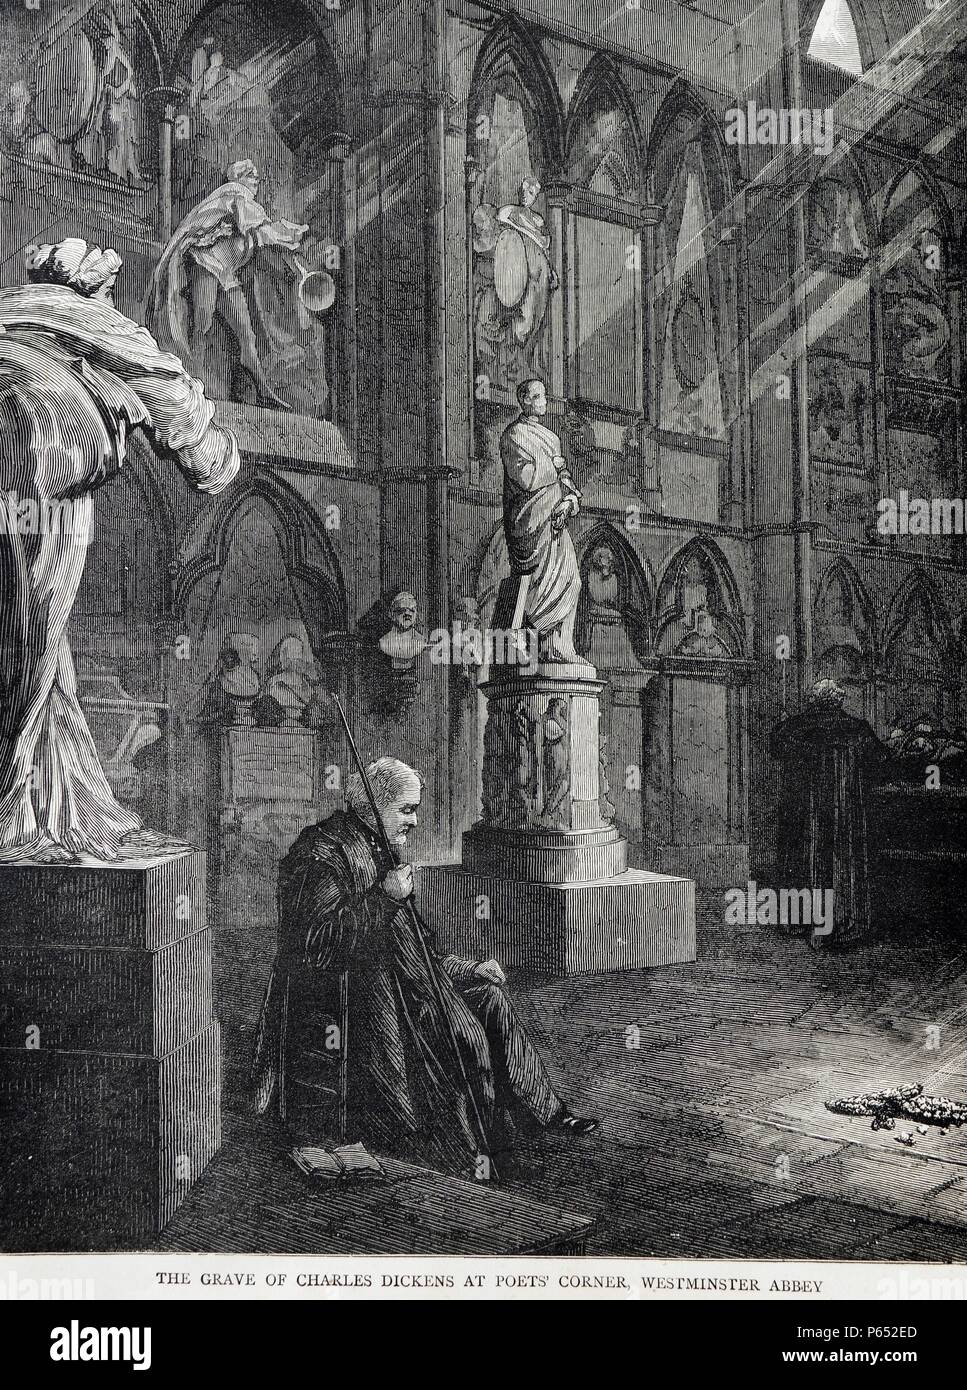 Ilustración describe la tumba de Charles Dickens (1812-1870) en el Rincón de los poetas, la Abadía de Westminster. Charles Dickens fue un escritor inglés y crítico social durante la época victoriana. Fecha 1870 Foto de stock